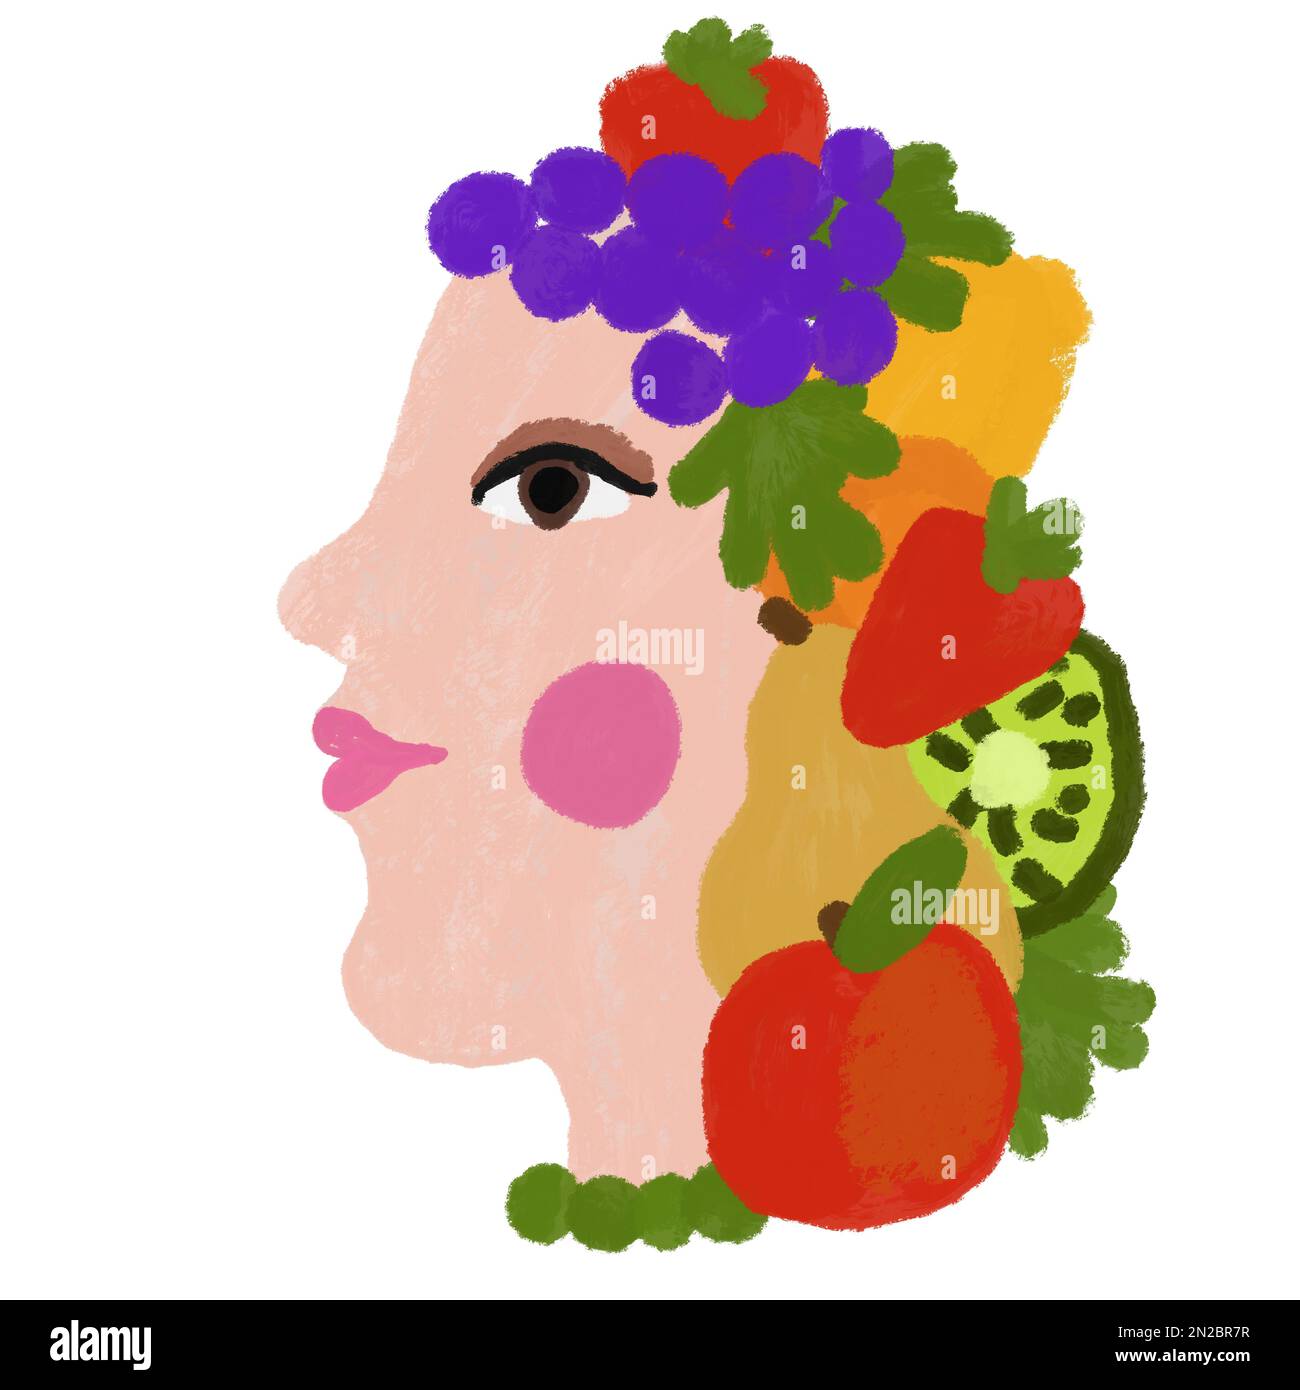 Handgezeichnete Künstlerdarstellung einer Frau mit verschiedenen Früchten. Grüne Verpackungspackung für frische Lebensmittel aus biologischem Anbau Logo-Schild, Apfeltrauben Erdbeere Kiwi vegane vegetarische Produkte, lockere Zeichnung im Lackstil Stockfoto